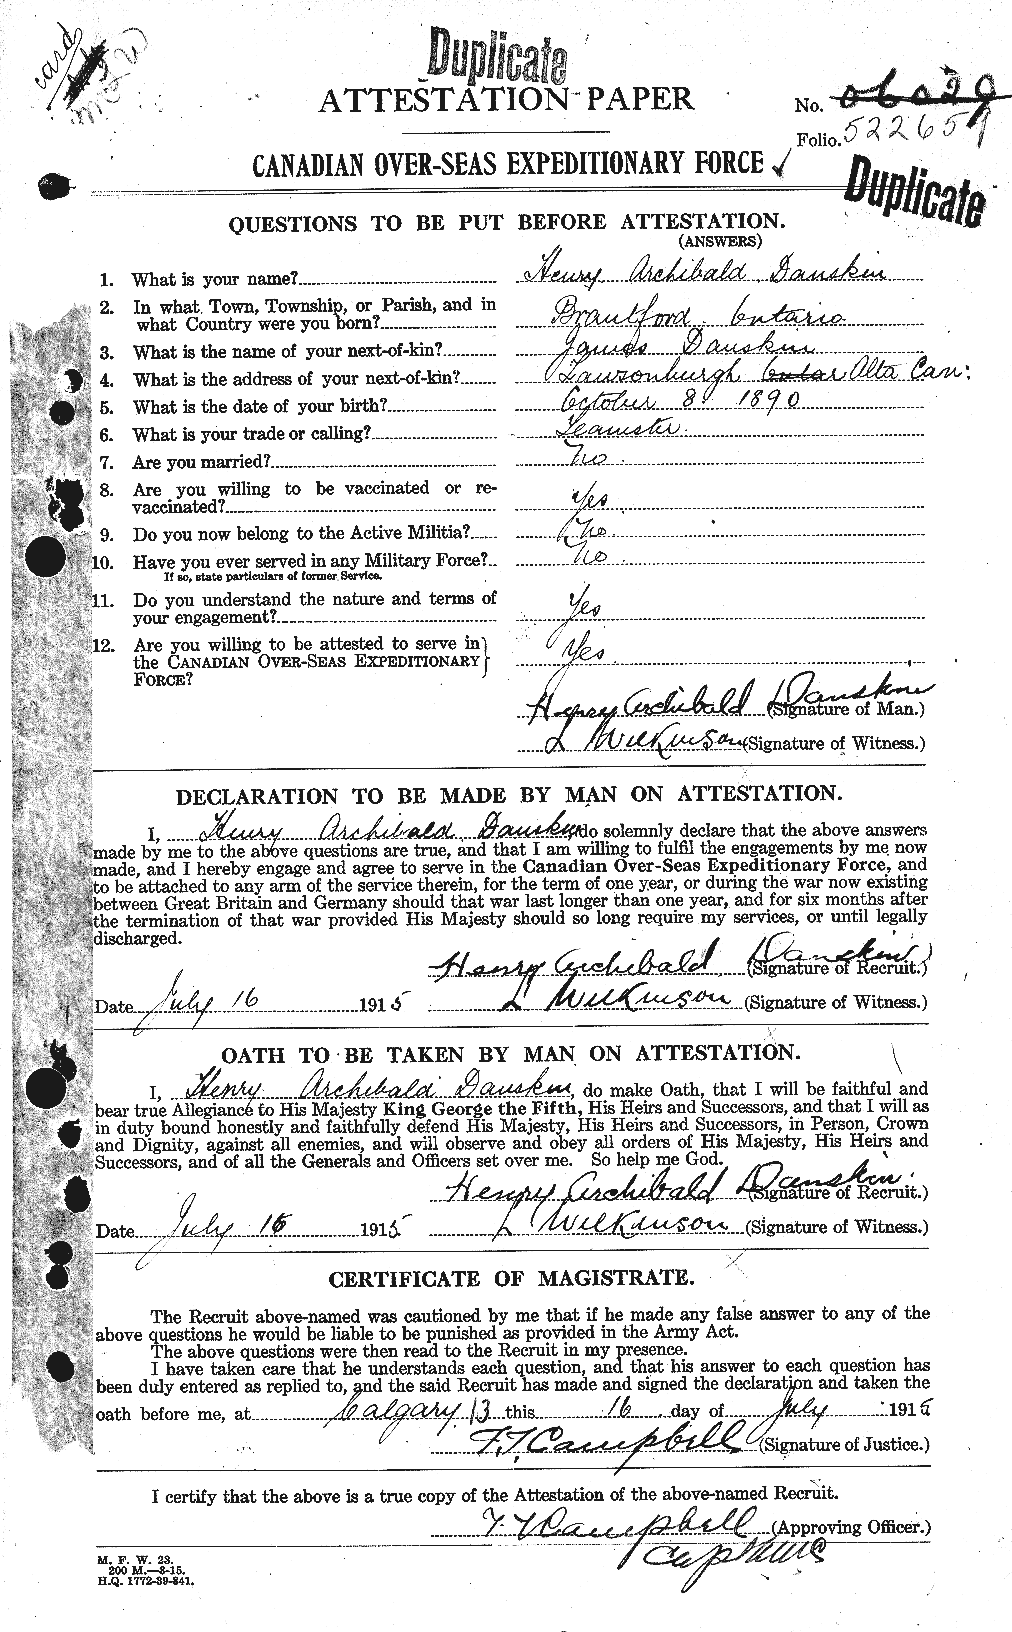 Dossiers du Personnel de la Première Guerre mondiale - CEC 279862a